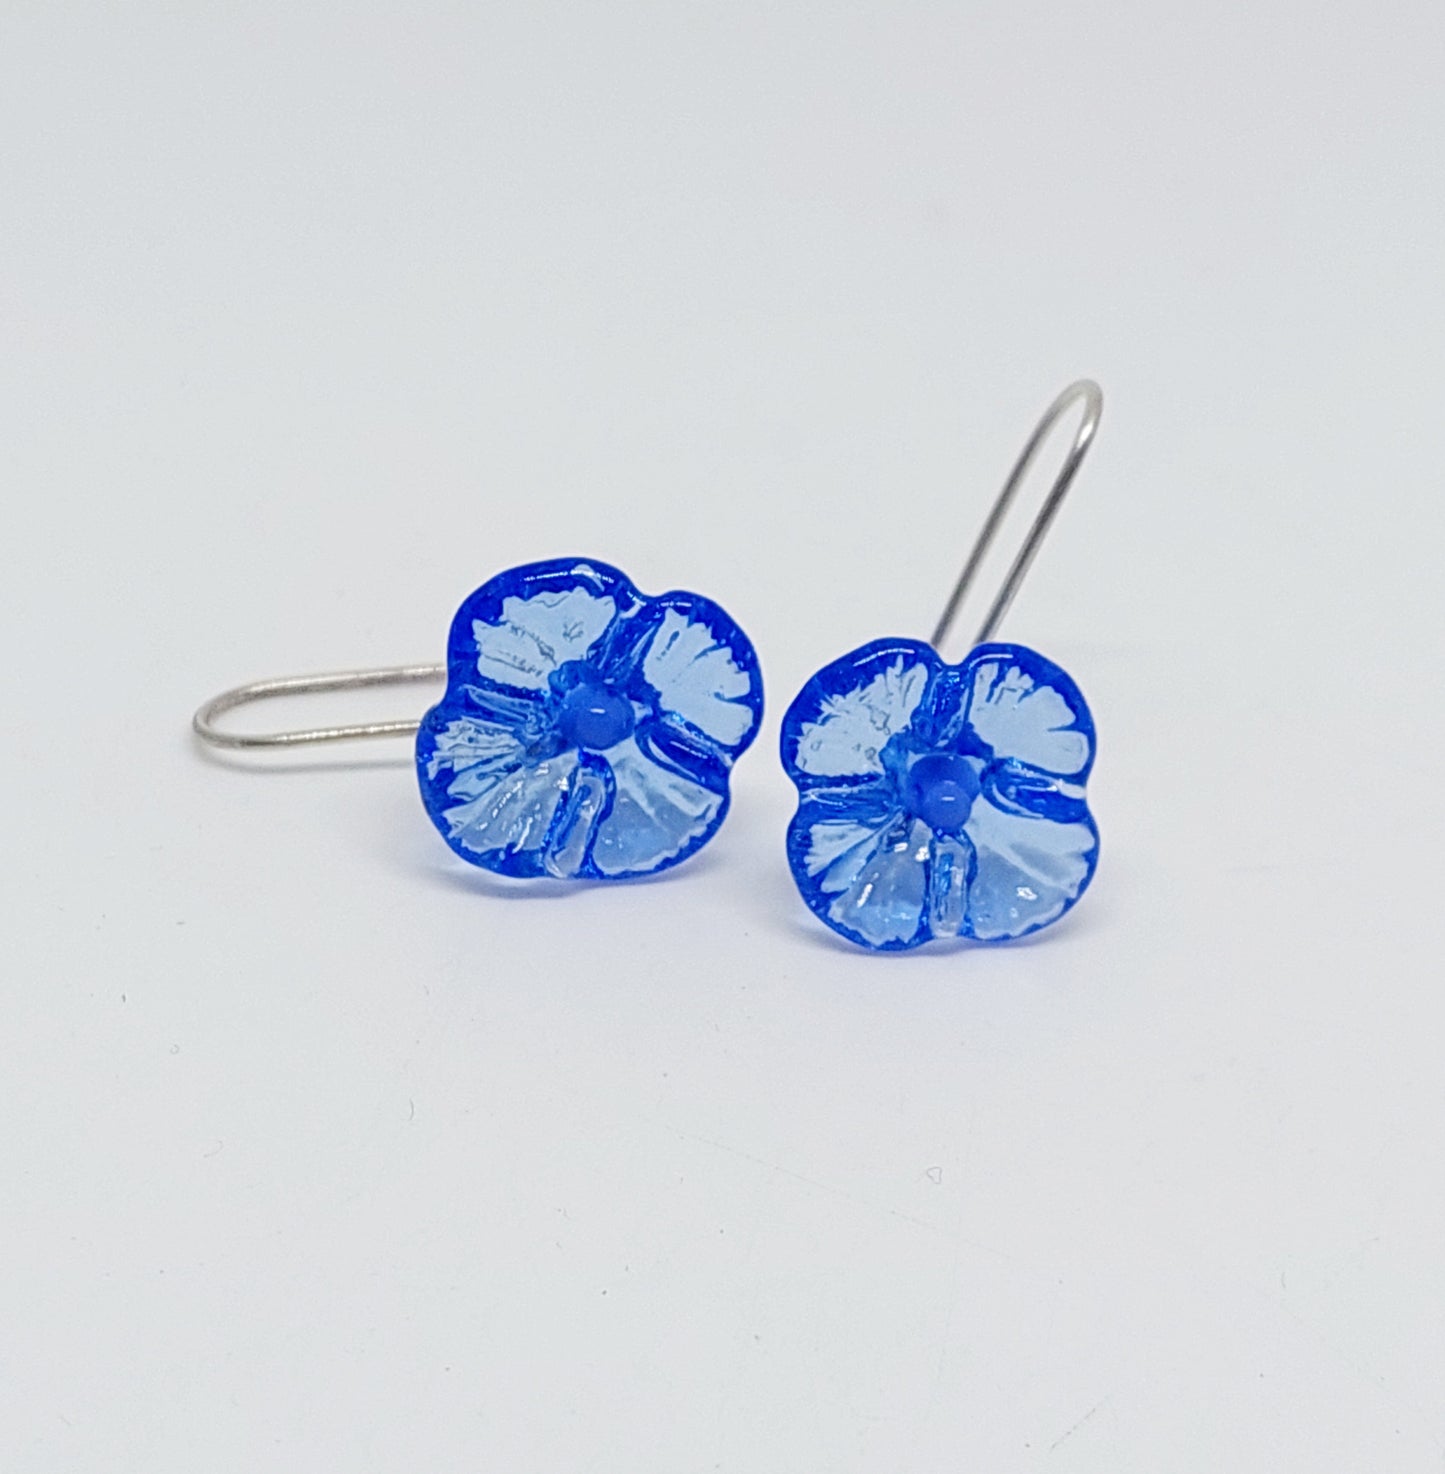 NEW!! Glass Art - Hydrangea flower earrings